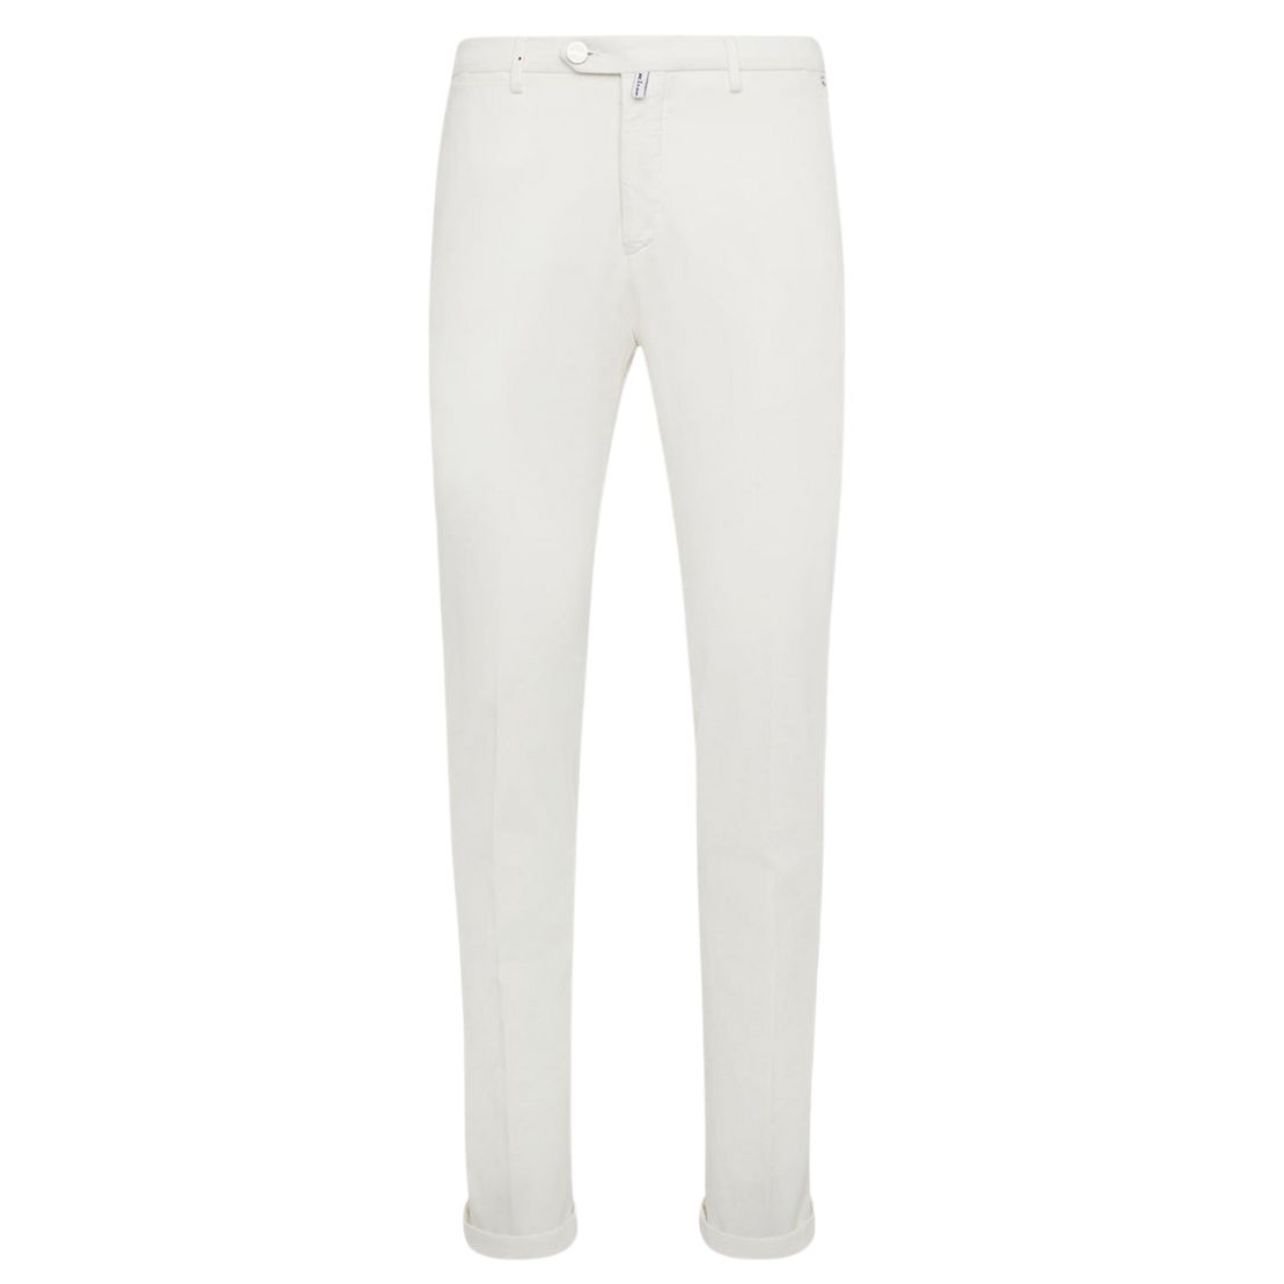 Kiton cotton white trousers